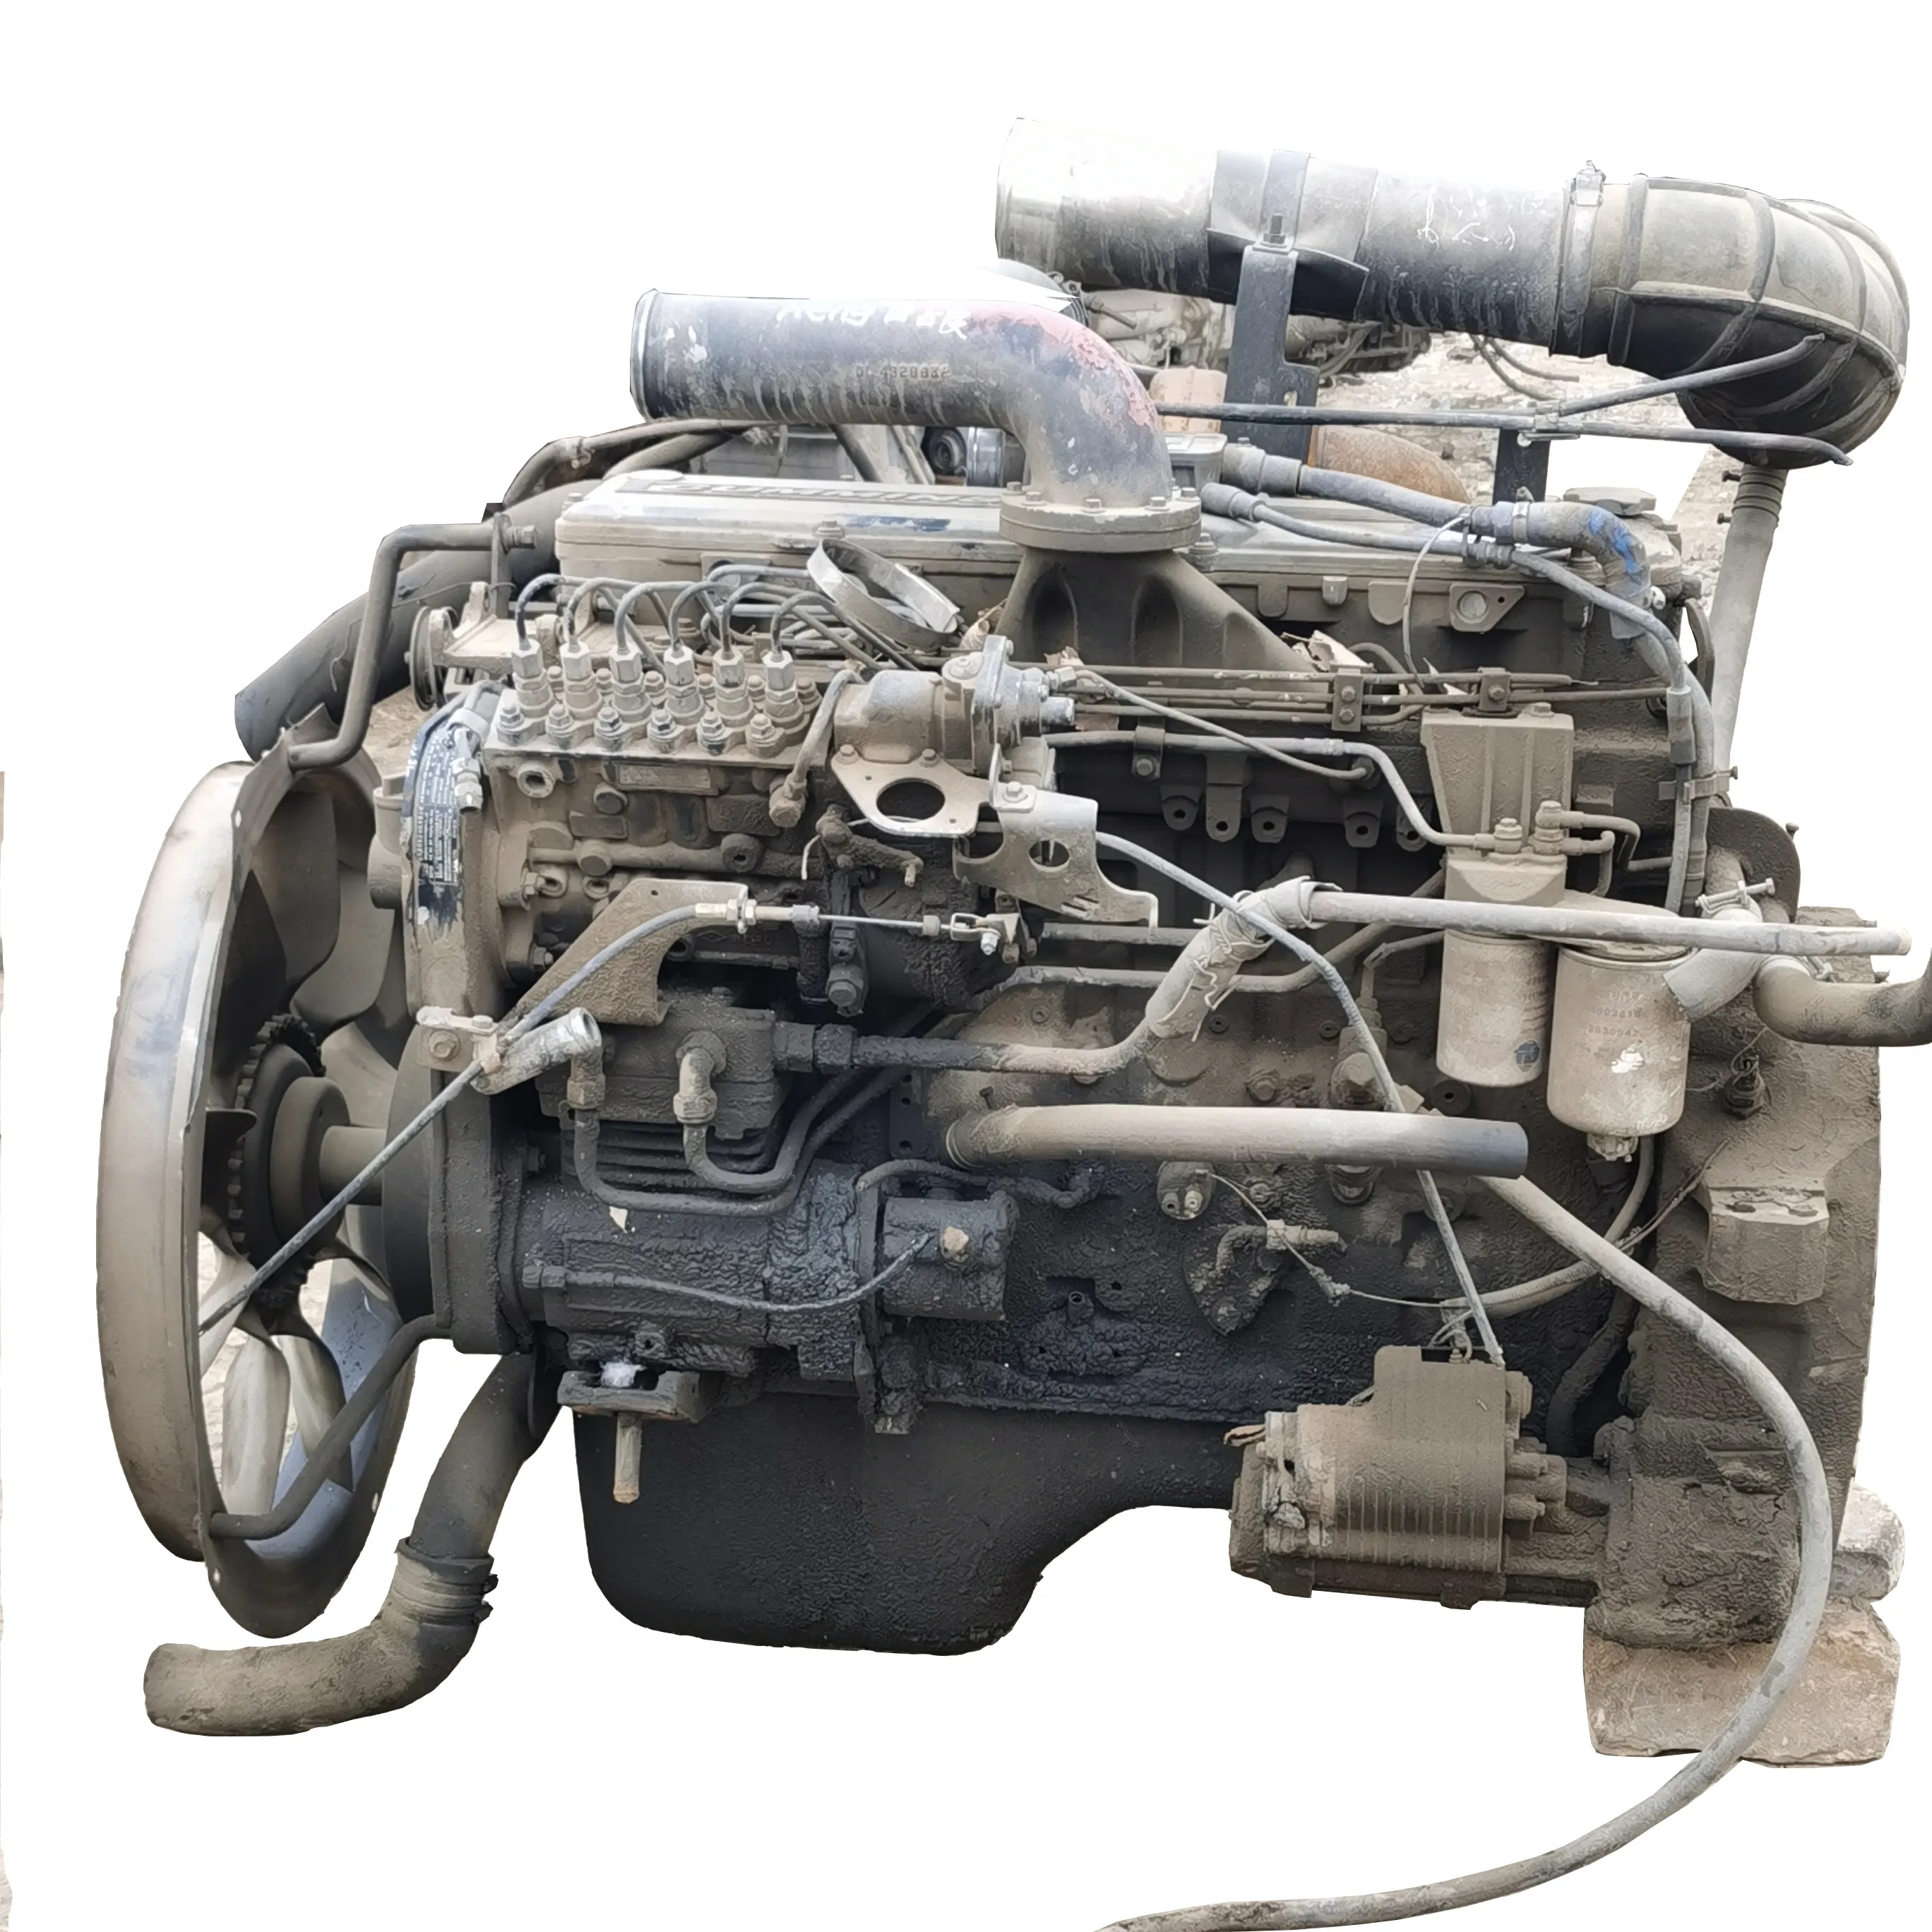 محرك مستعمل 6l 8.9l 375hp لاستخدام محرك شاحنة Minss